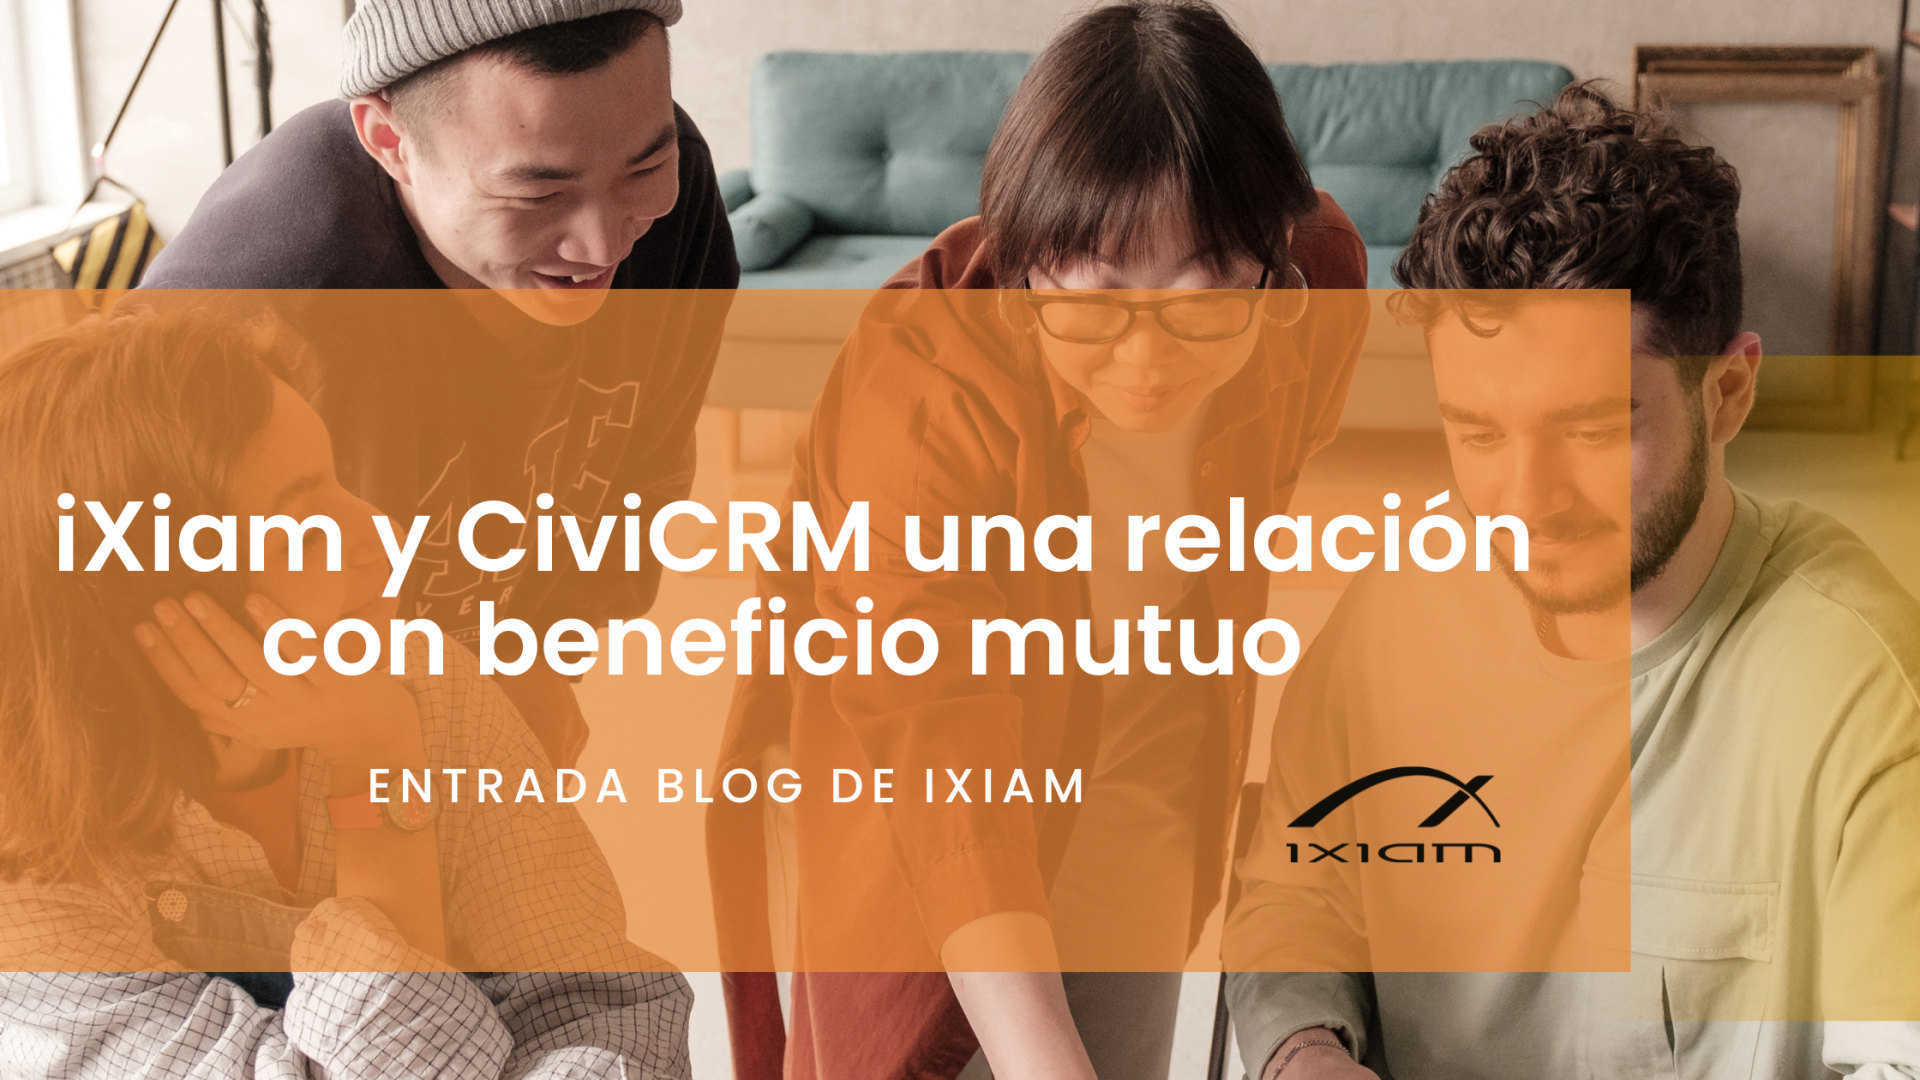 iXiam y CiviCRM colaboran en la mejora continua de un software que facilita la gestión del día a día en las organizaciones del Tercer Sector.